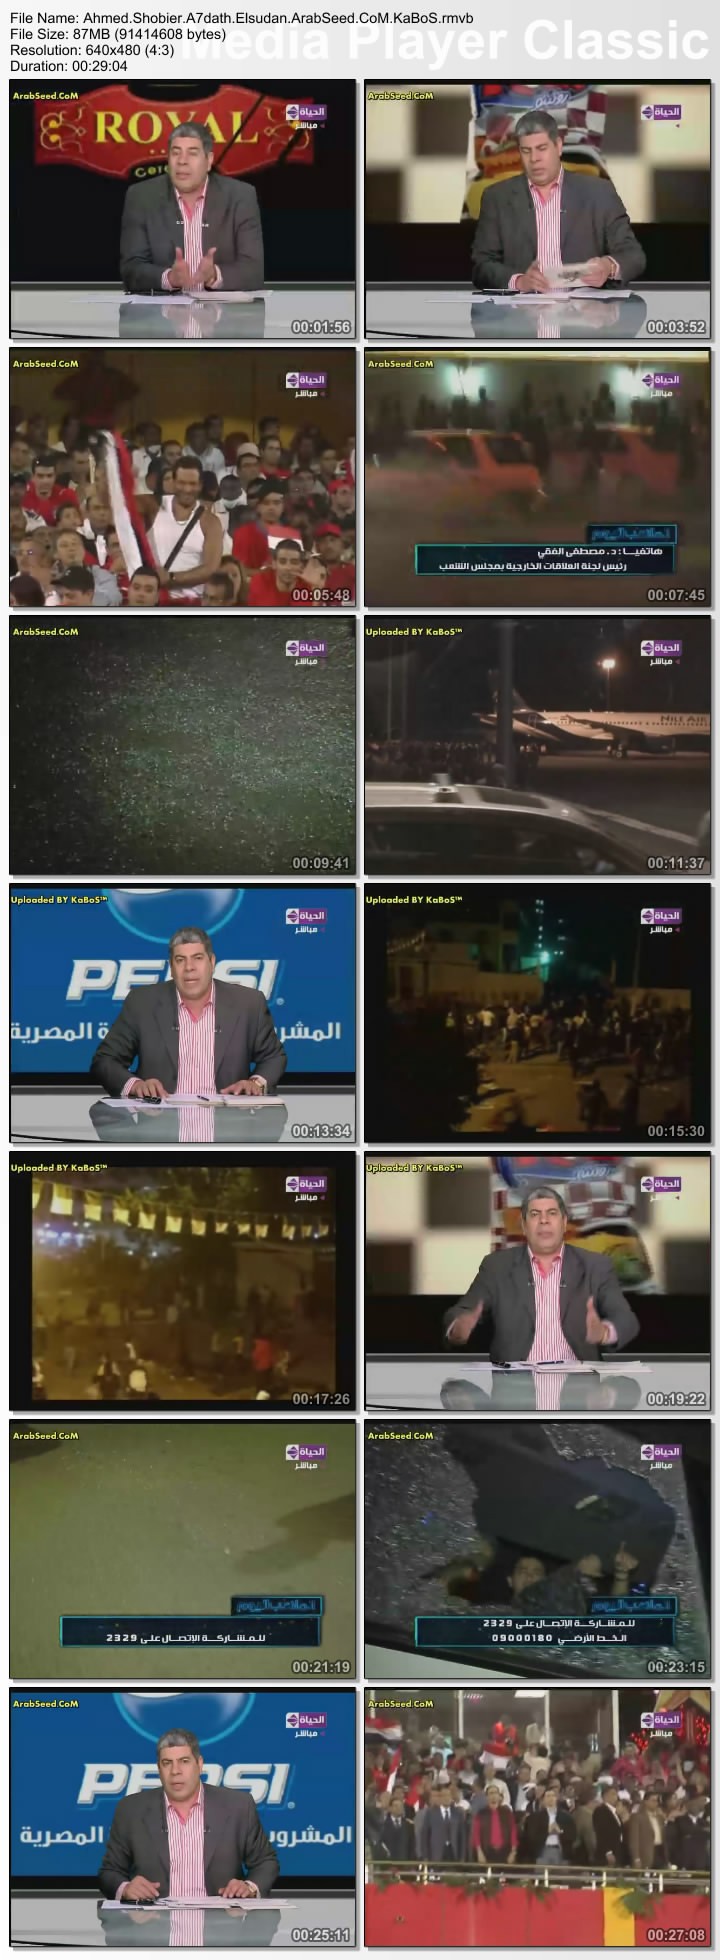 برنامج احمد شوبير الملعب اليوم و خفايا واسرار حول الاعتداءات Thumbs25